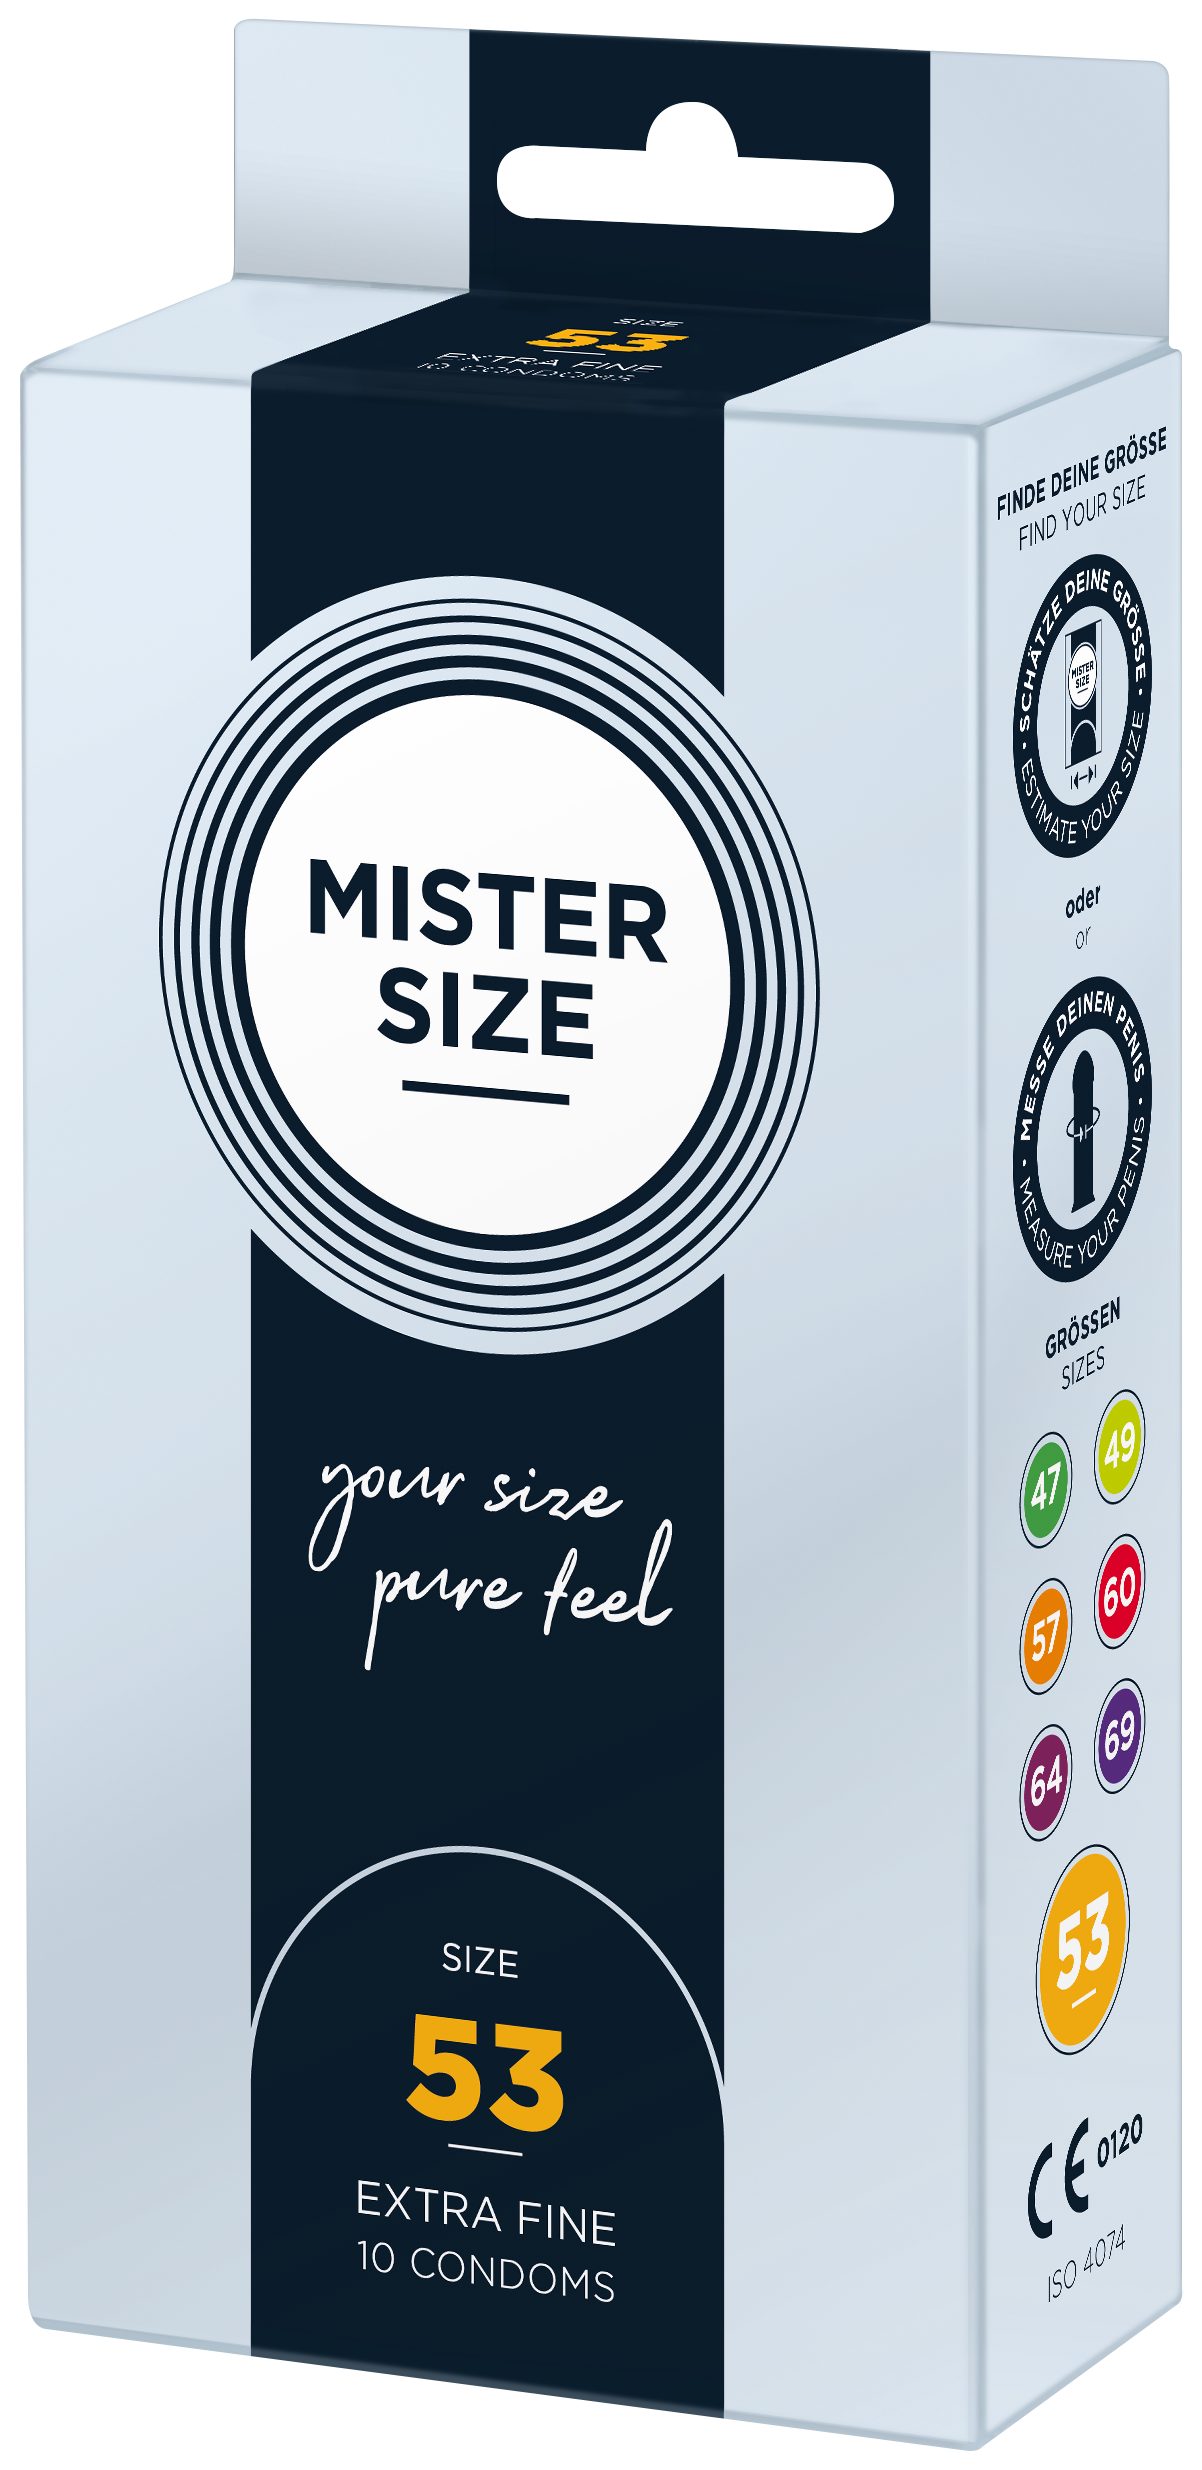 MISTER SIZE Kondome 10 Stück, Nominale 53mm, Breite & feucht gefühlsecht